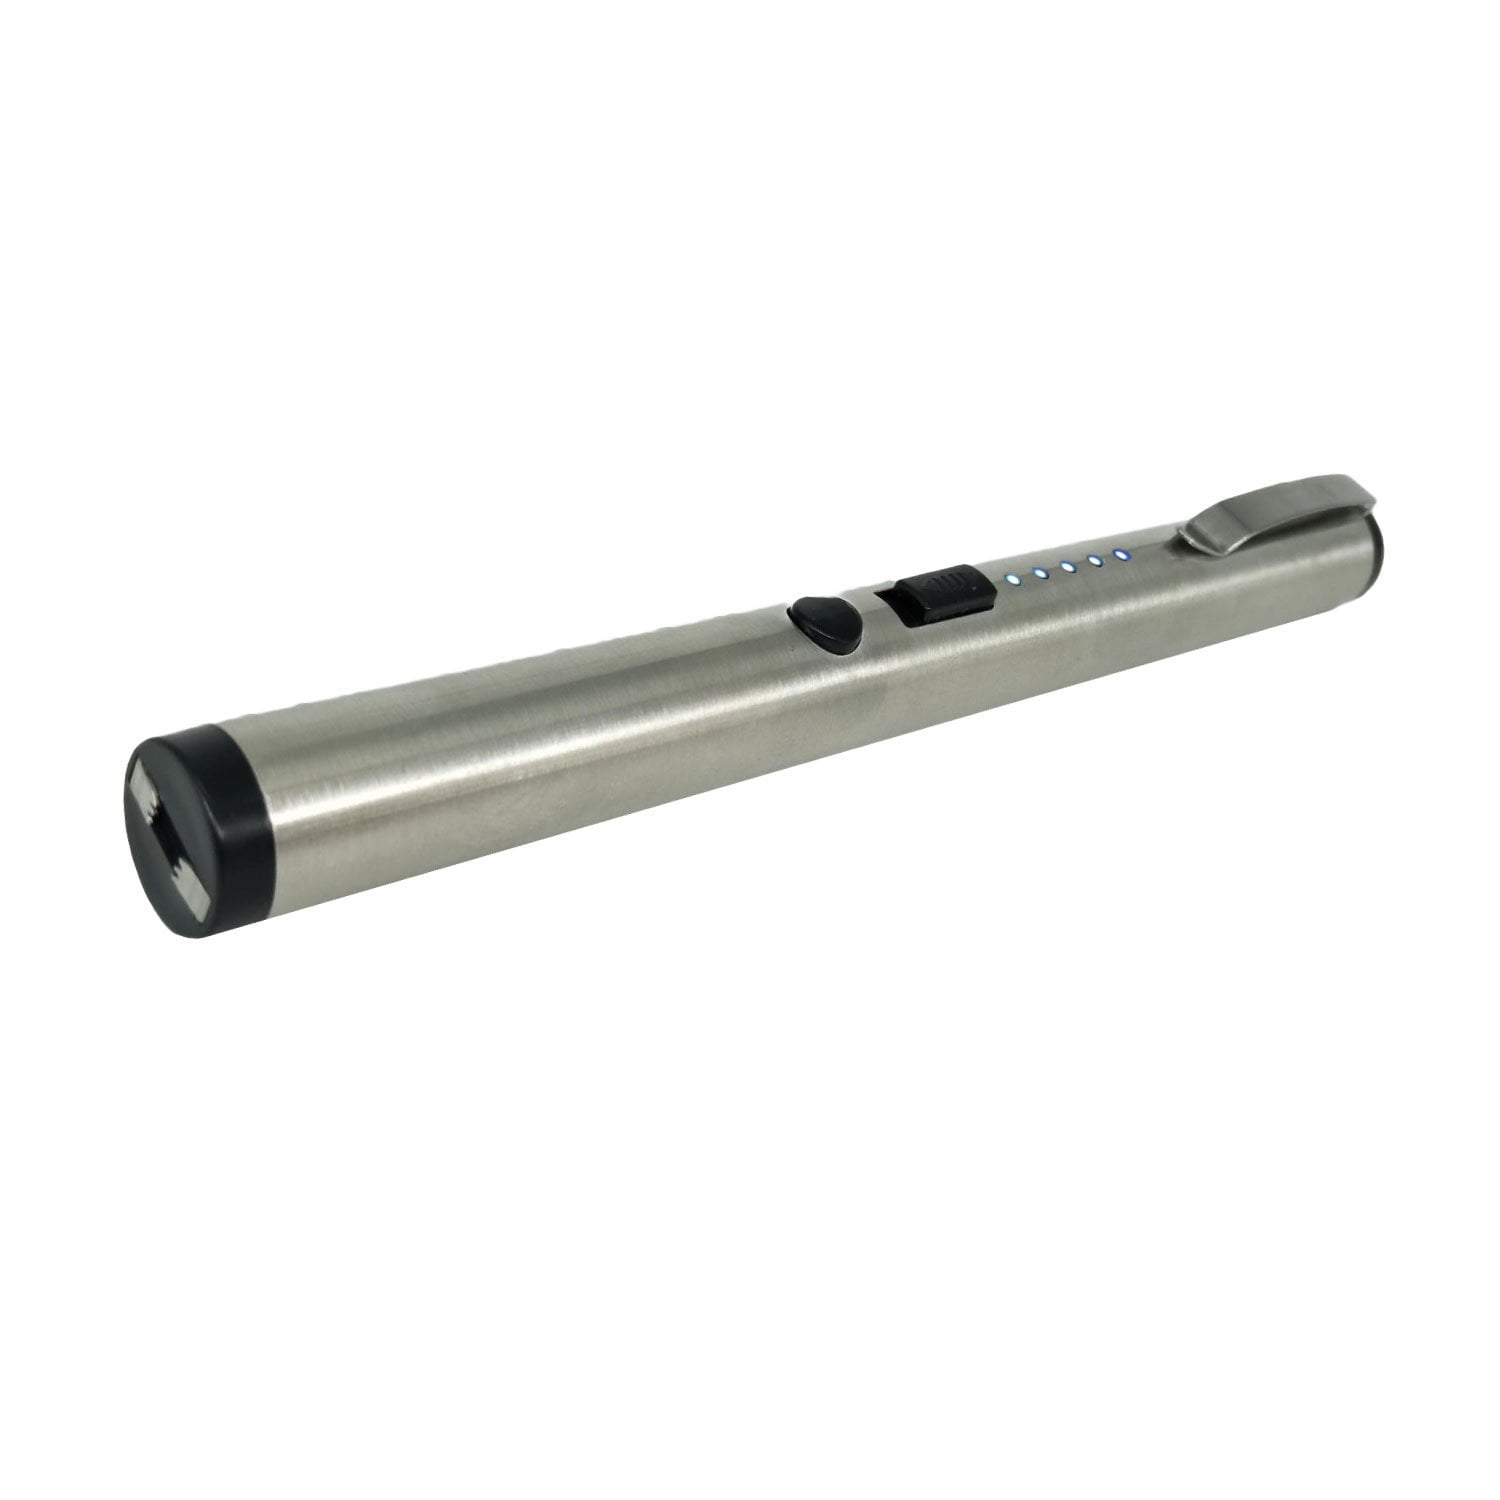 Streetwise 25M Pain Pen Stun Gun - Silver Profile